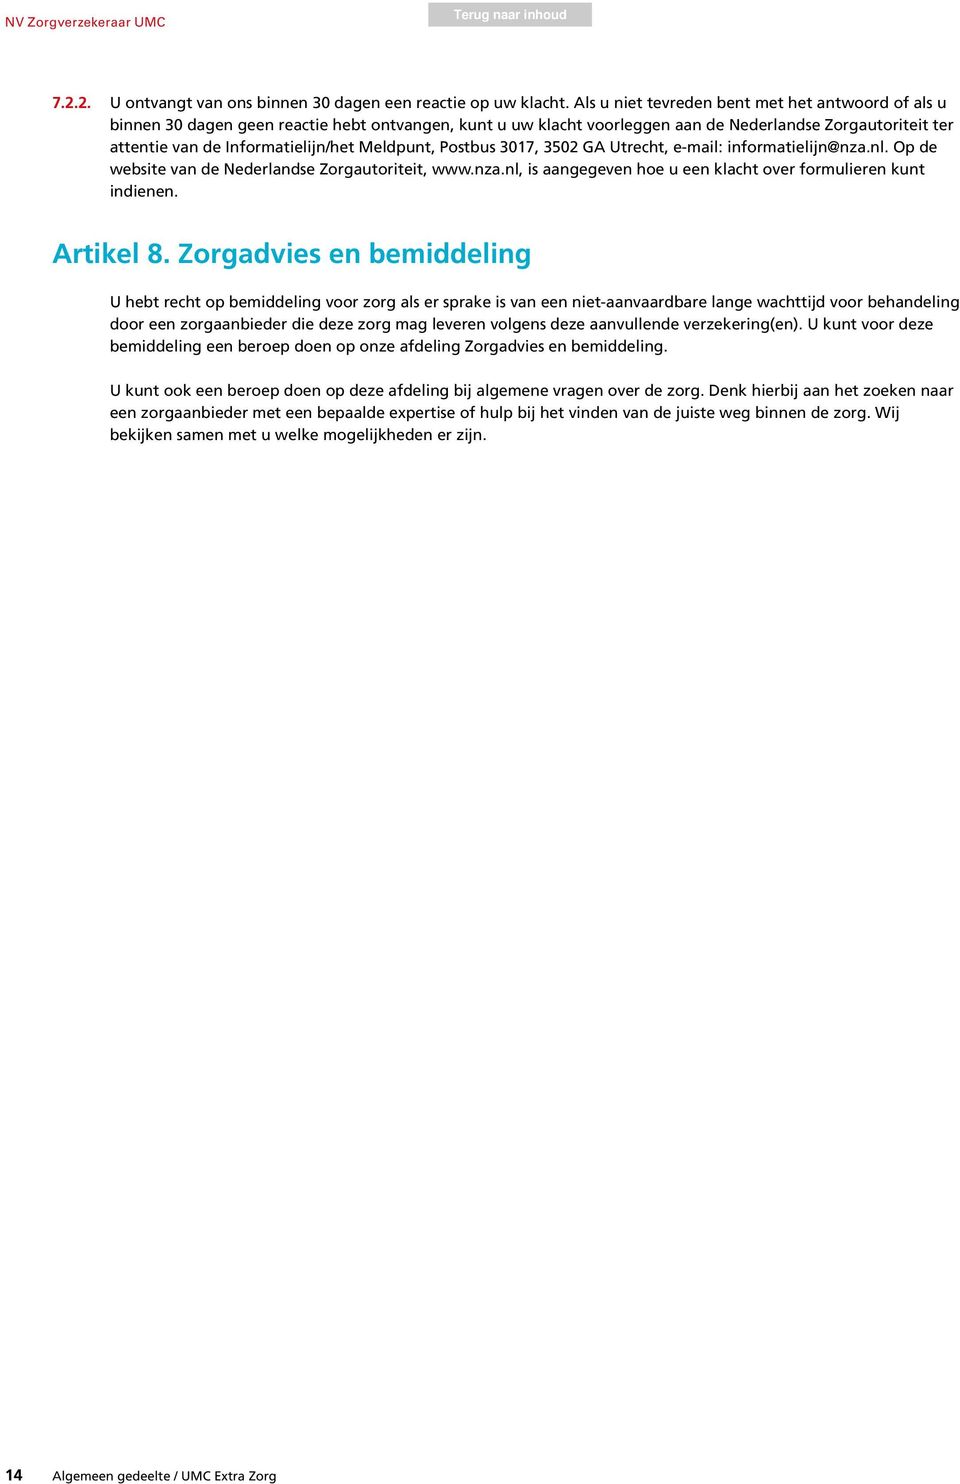 Meldpunt, Postbus 3017, 3502 GA Utrecht, e-mail: informatielijn@nza.nl. Op de website van de Nederlandse Zorgautoriteit, www.nza.nl, is aangegeven hoe u een klacht over formulieren kunt indienen.